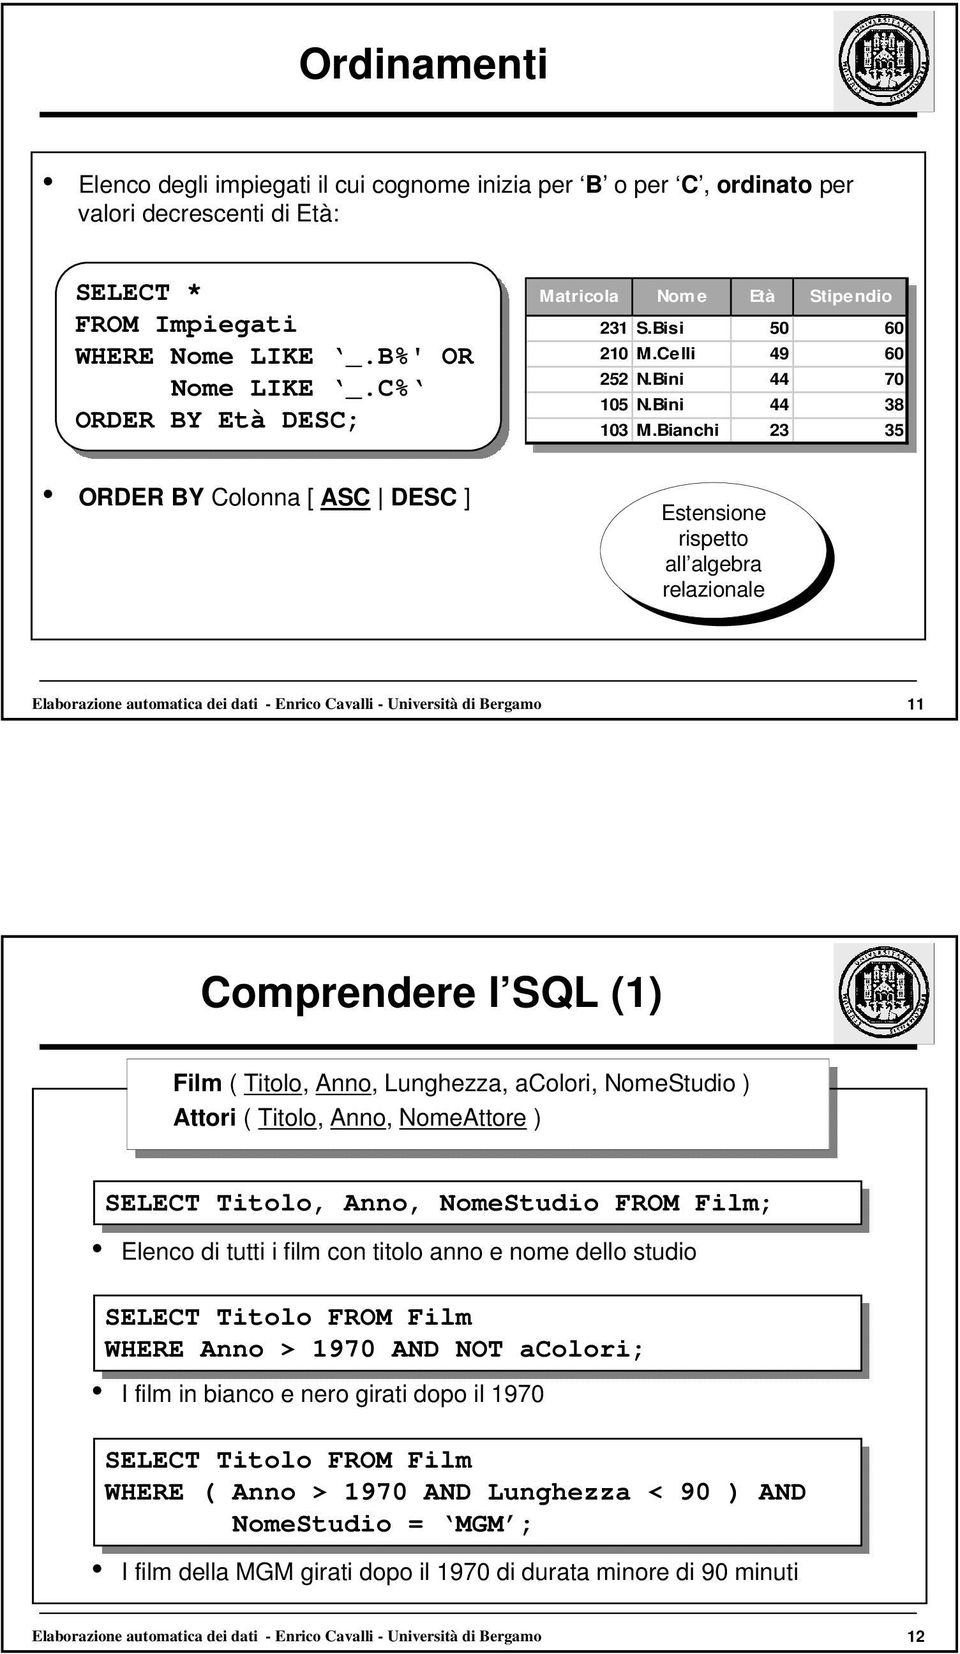 Bianchi 23 23 35 35 ORDER BY Colonna [ ASC DESC ] Estensione rispetto all algebra relazionale Elaborazione automatica dei dati - Enrico Cavalli - Università di Bergamo 11 Comprendere l SQL (1) Film (